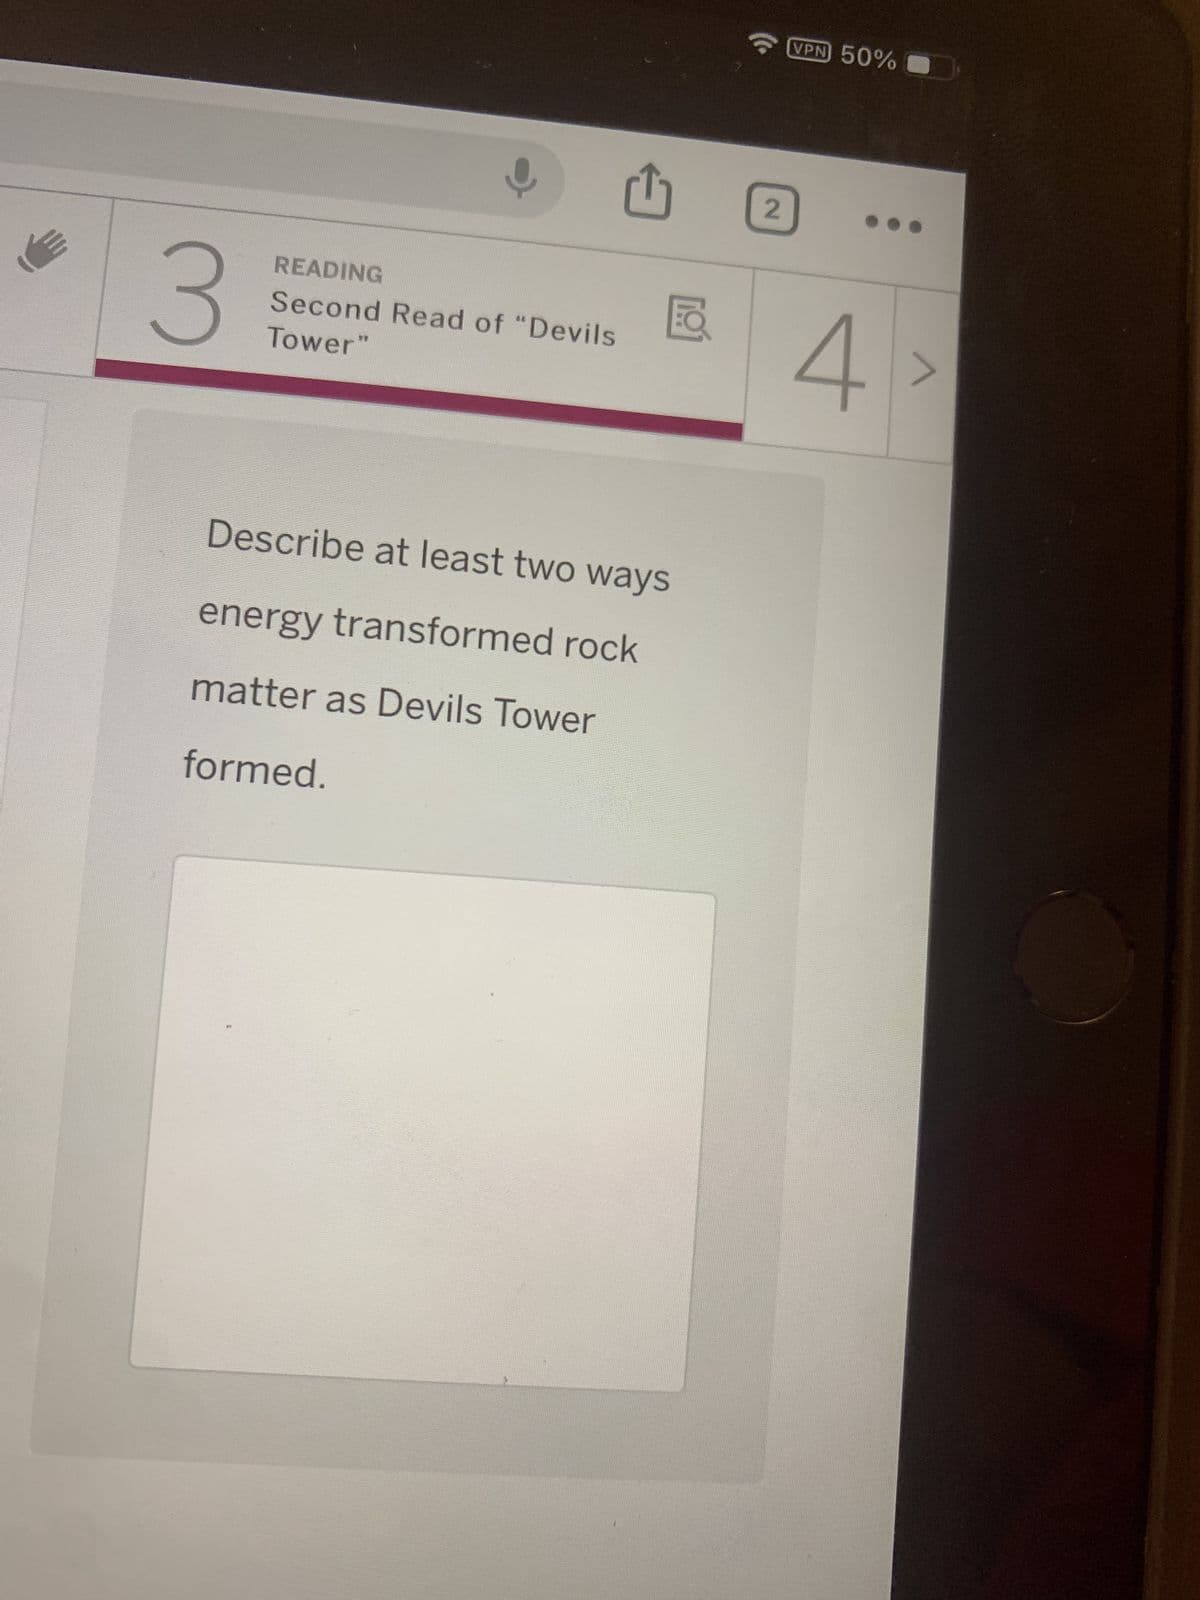 트
3
READING
Tower"
Second Read of "Devils
Describe at least two ways
energy transformed rock
matter as Devils Tower
formed.
VPN 50%
2
4
>